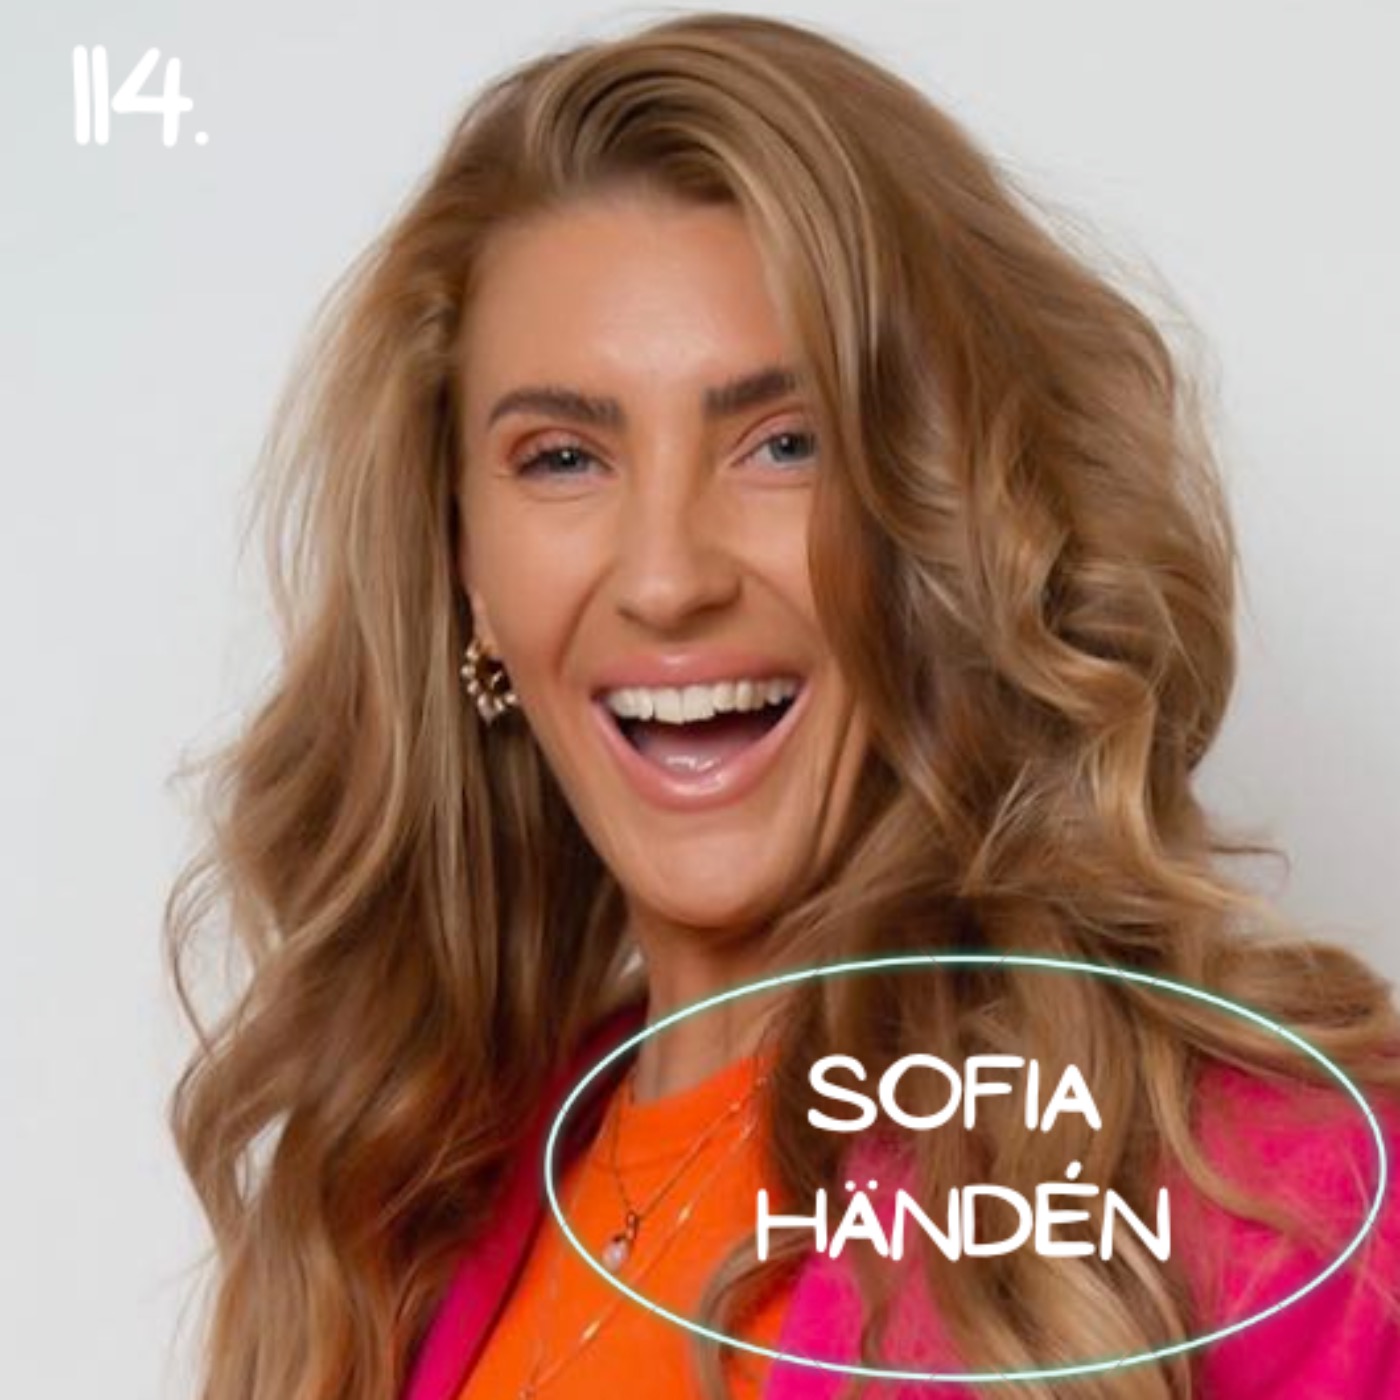 114. Sofia Händén - Vill skapa en sagovärld